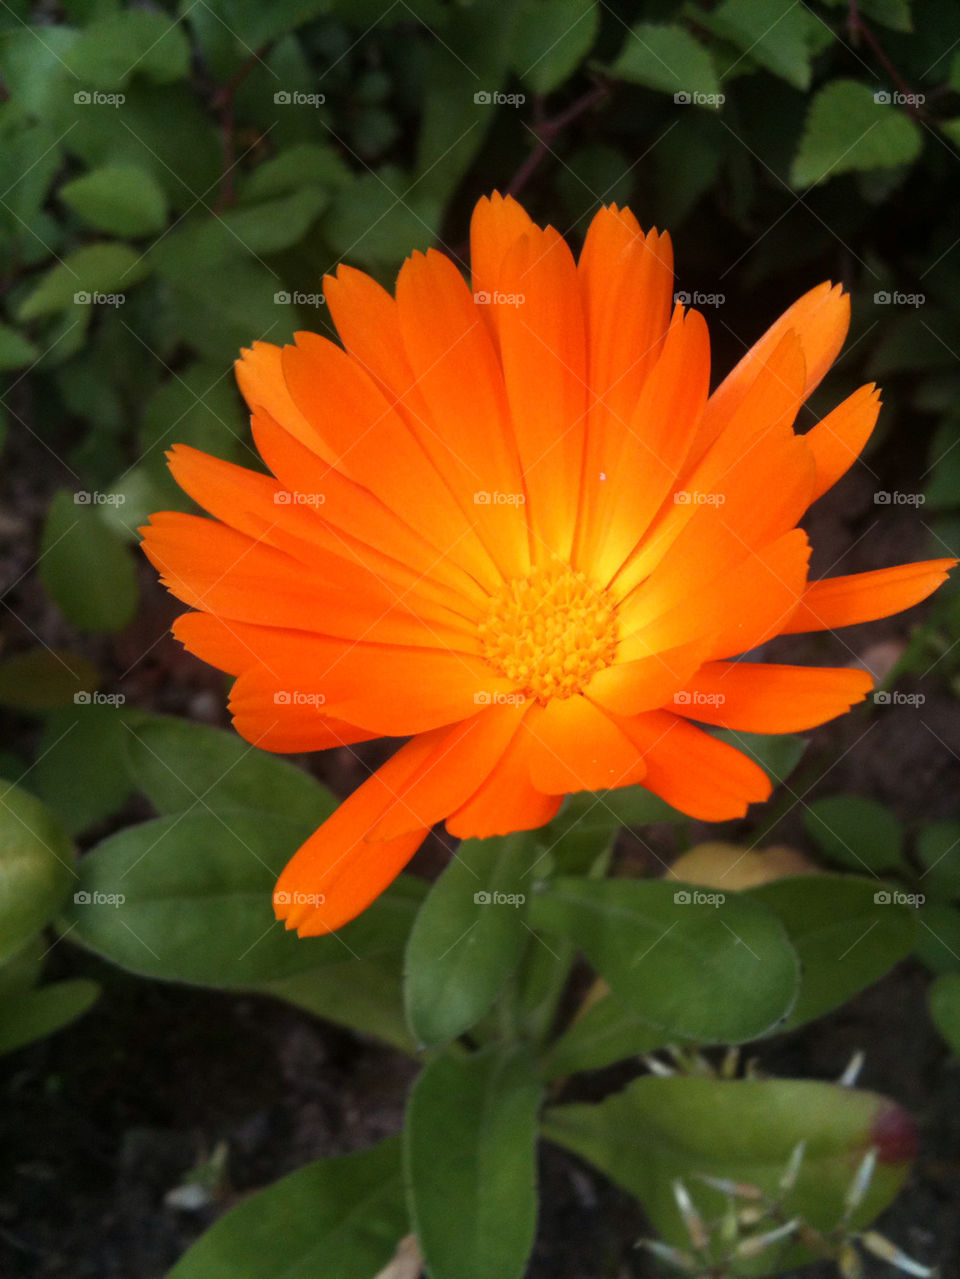 garden flower orange sun by gregmanchester